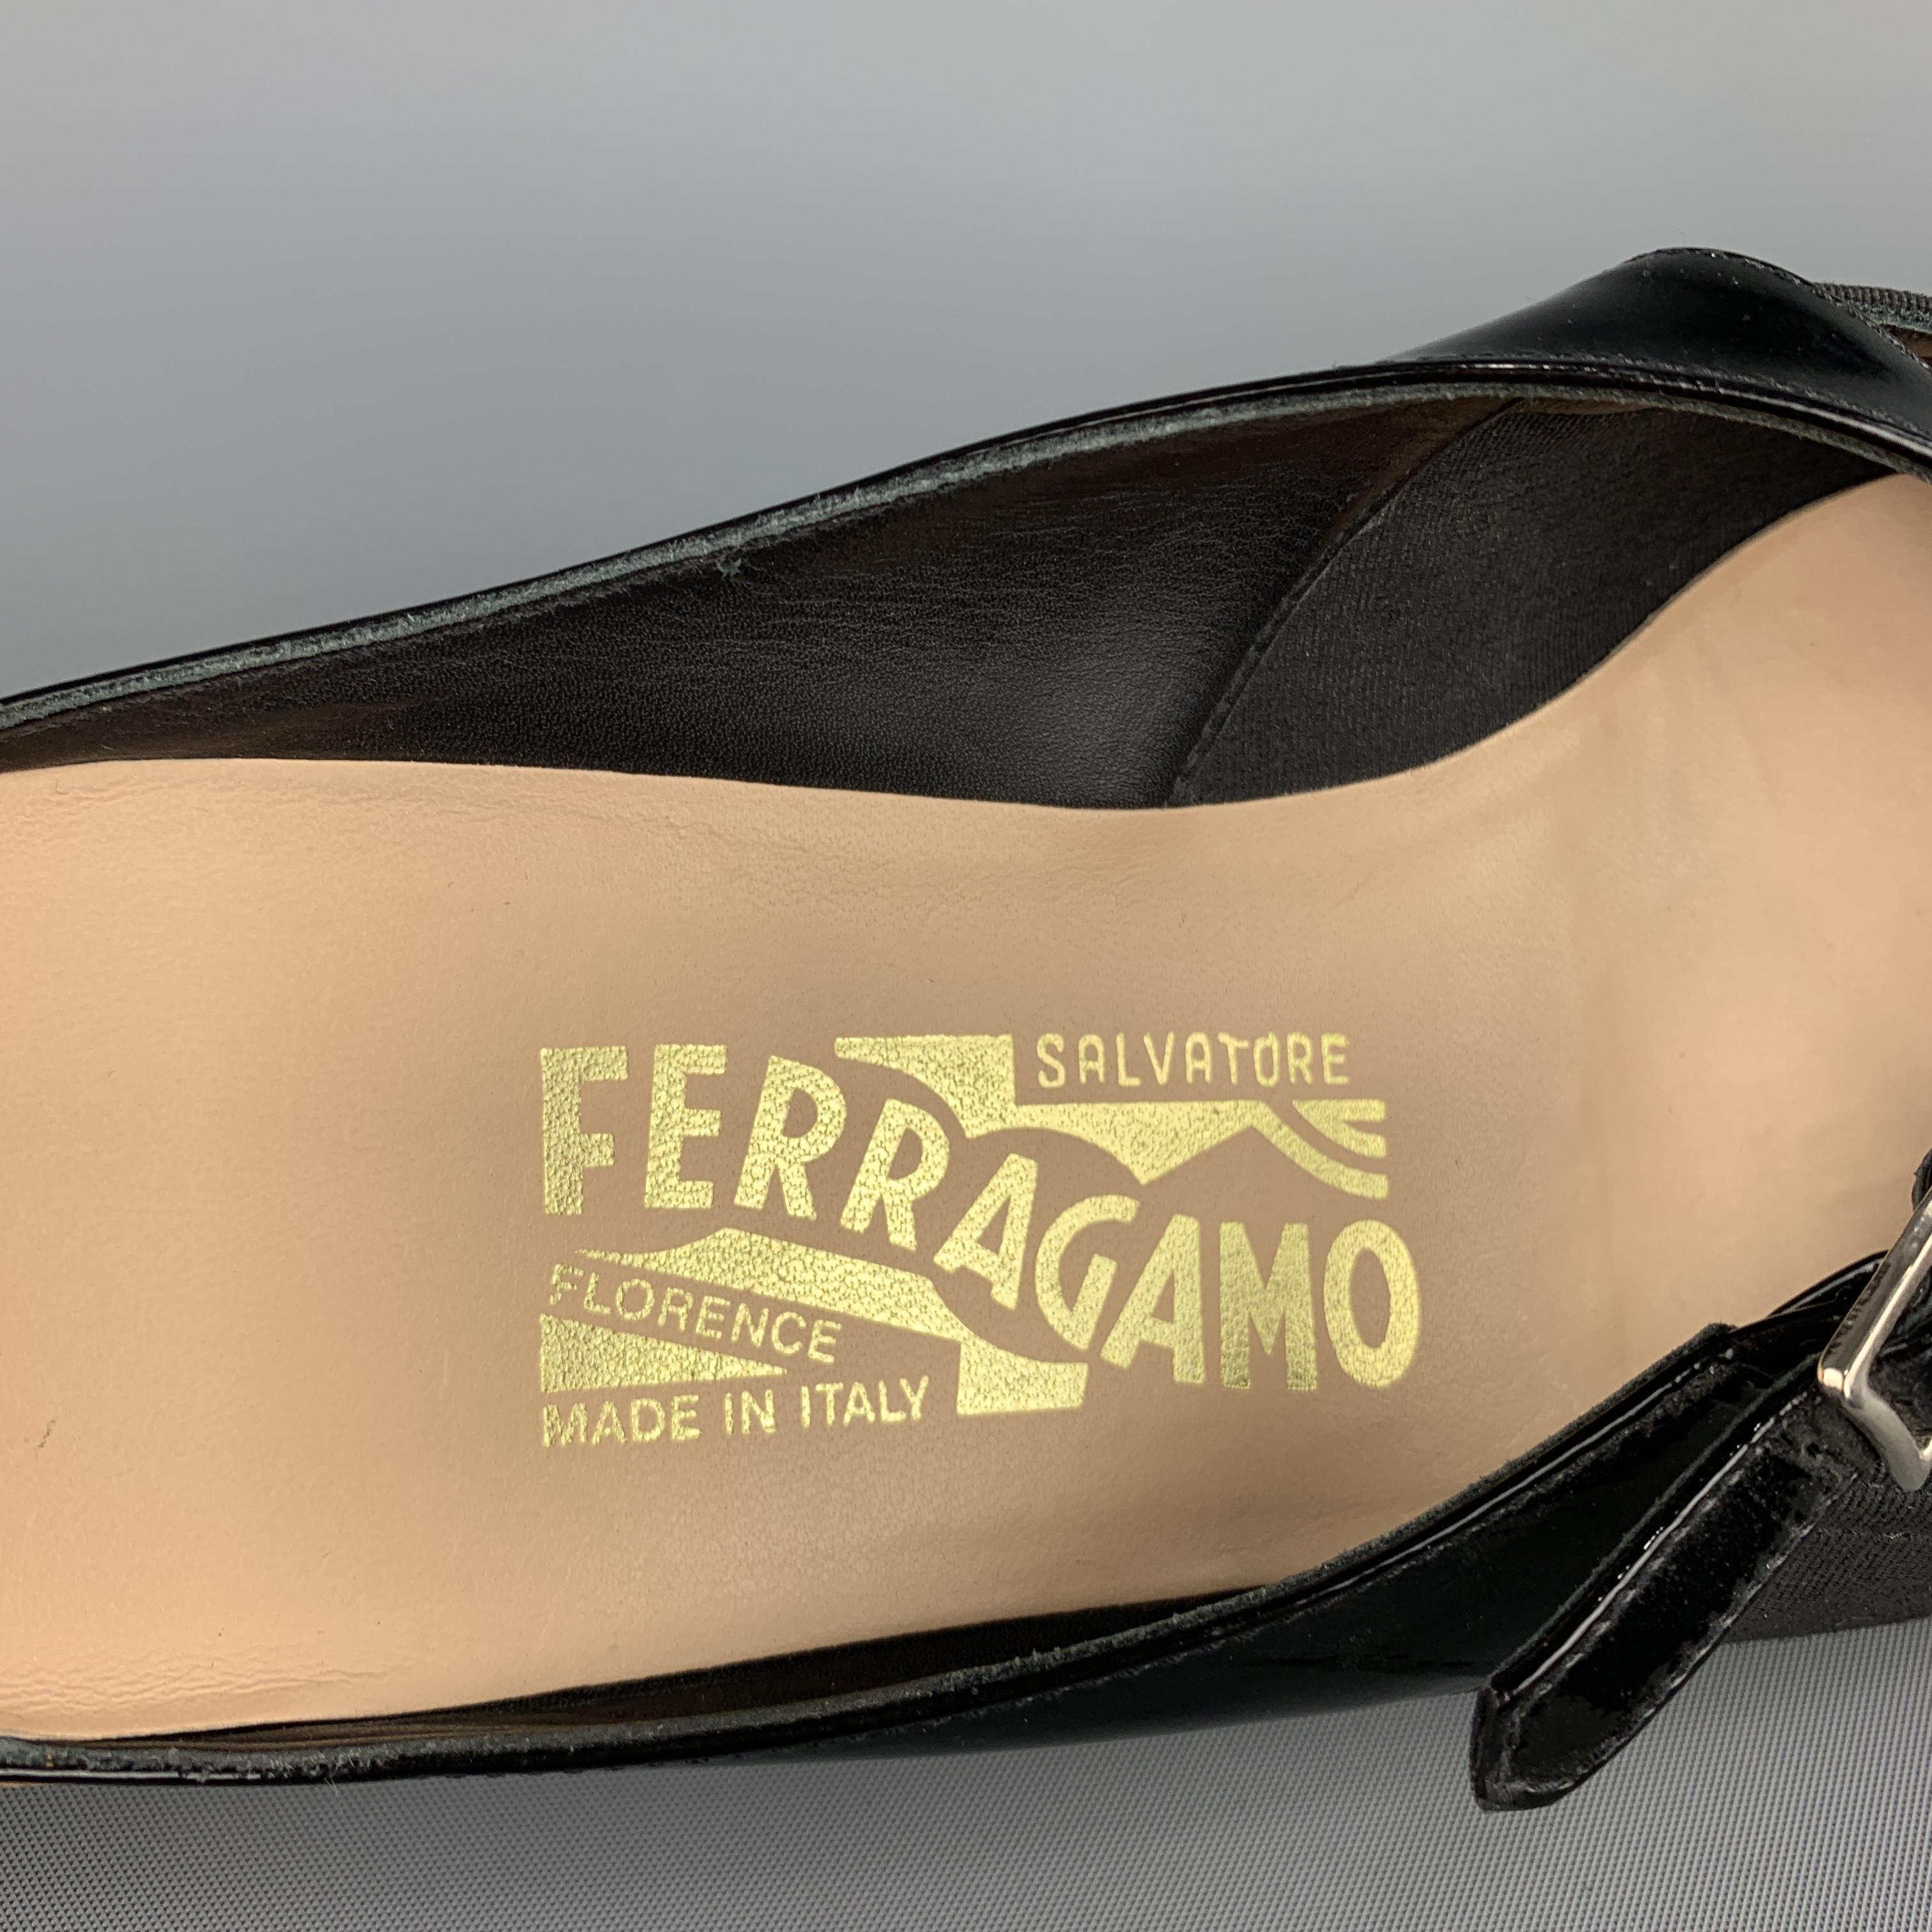 SALVATORE FERRAGAMO Size 7.5 Black Silk Faille & Patent Leather Flats 1